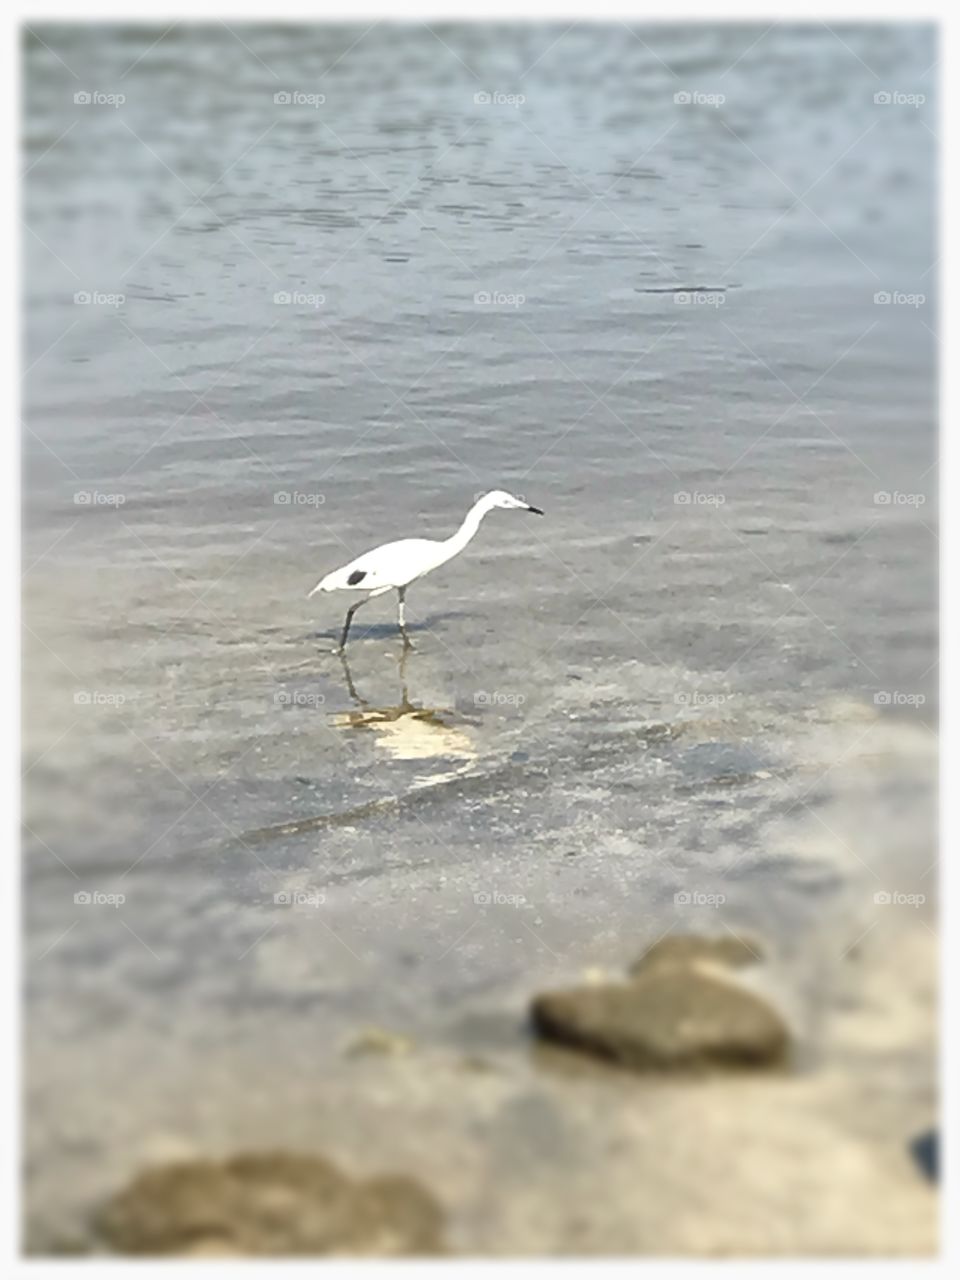 Shorebird at edge of waterway